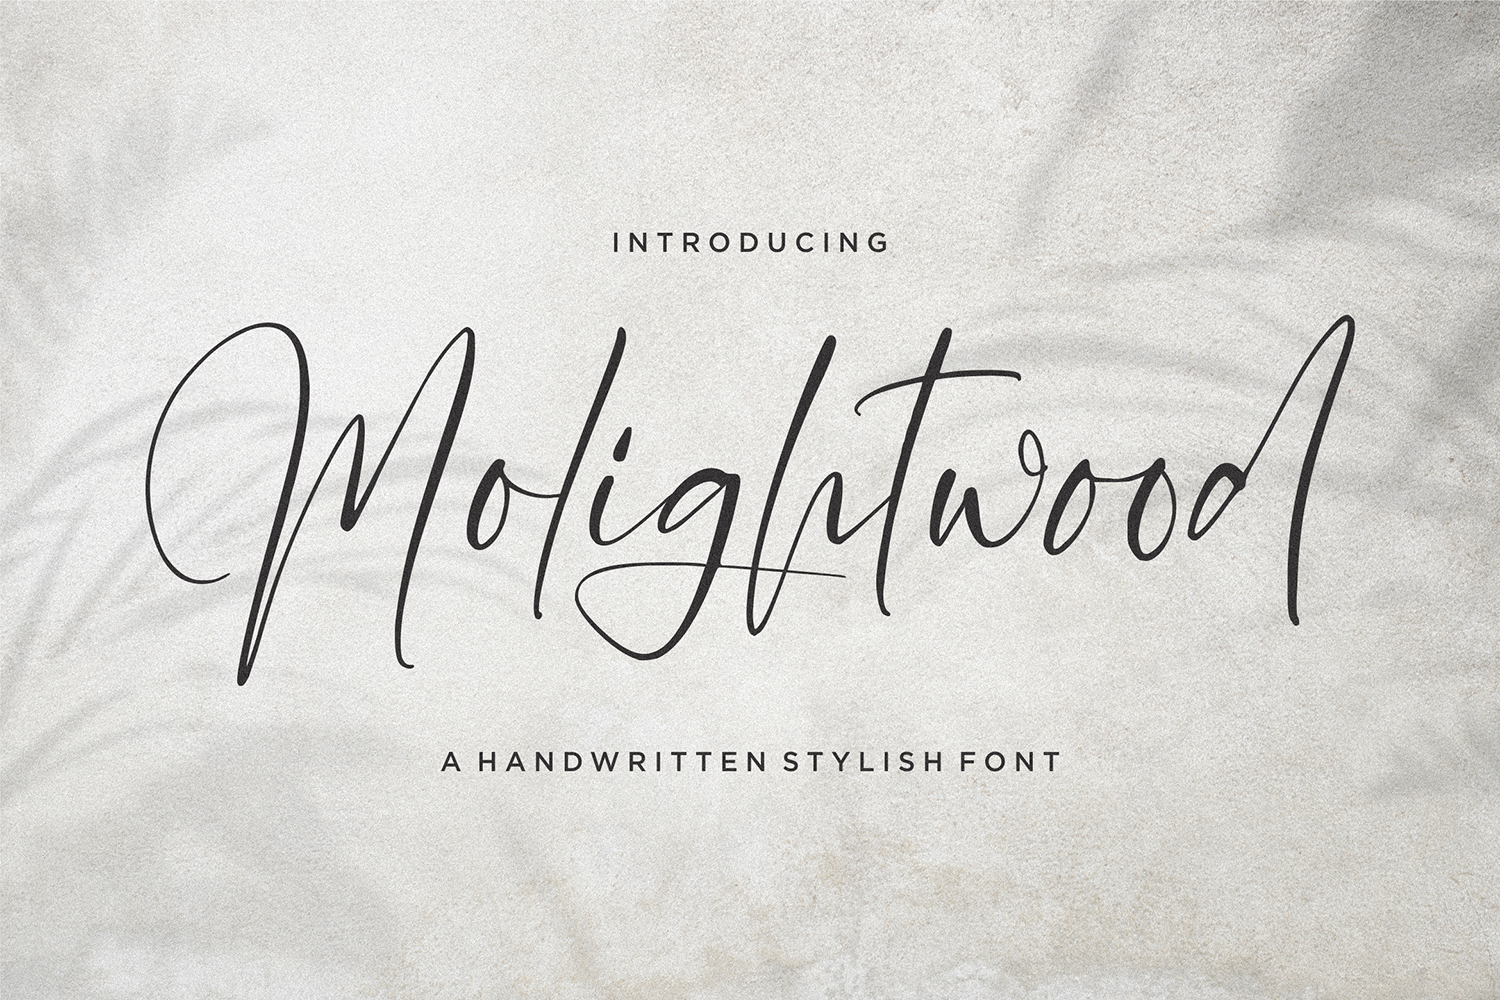 Molighwood Free Font